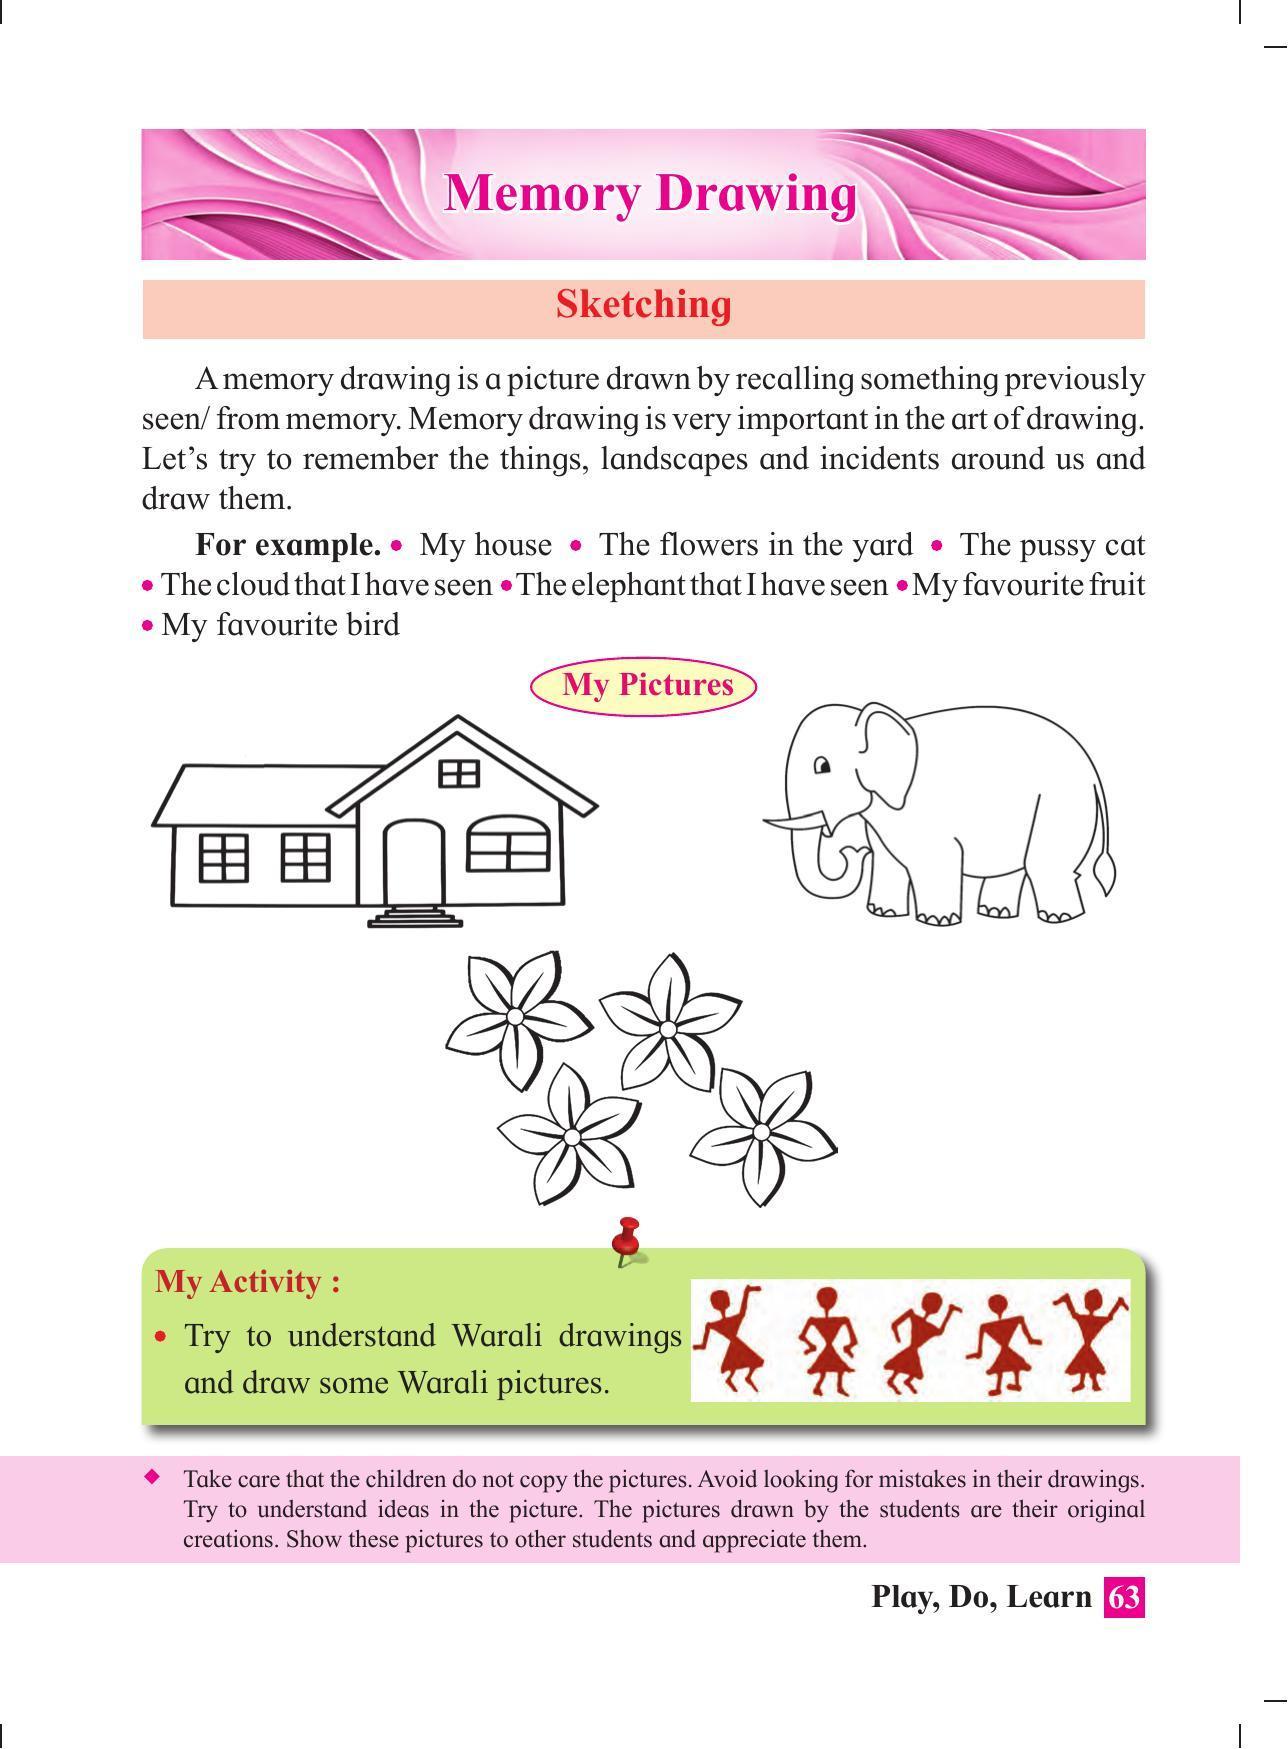 Maharashtra Board Class 4 Play Do Learn (English Medium) Textbook - Page 72